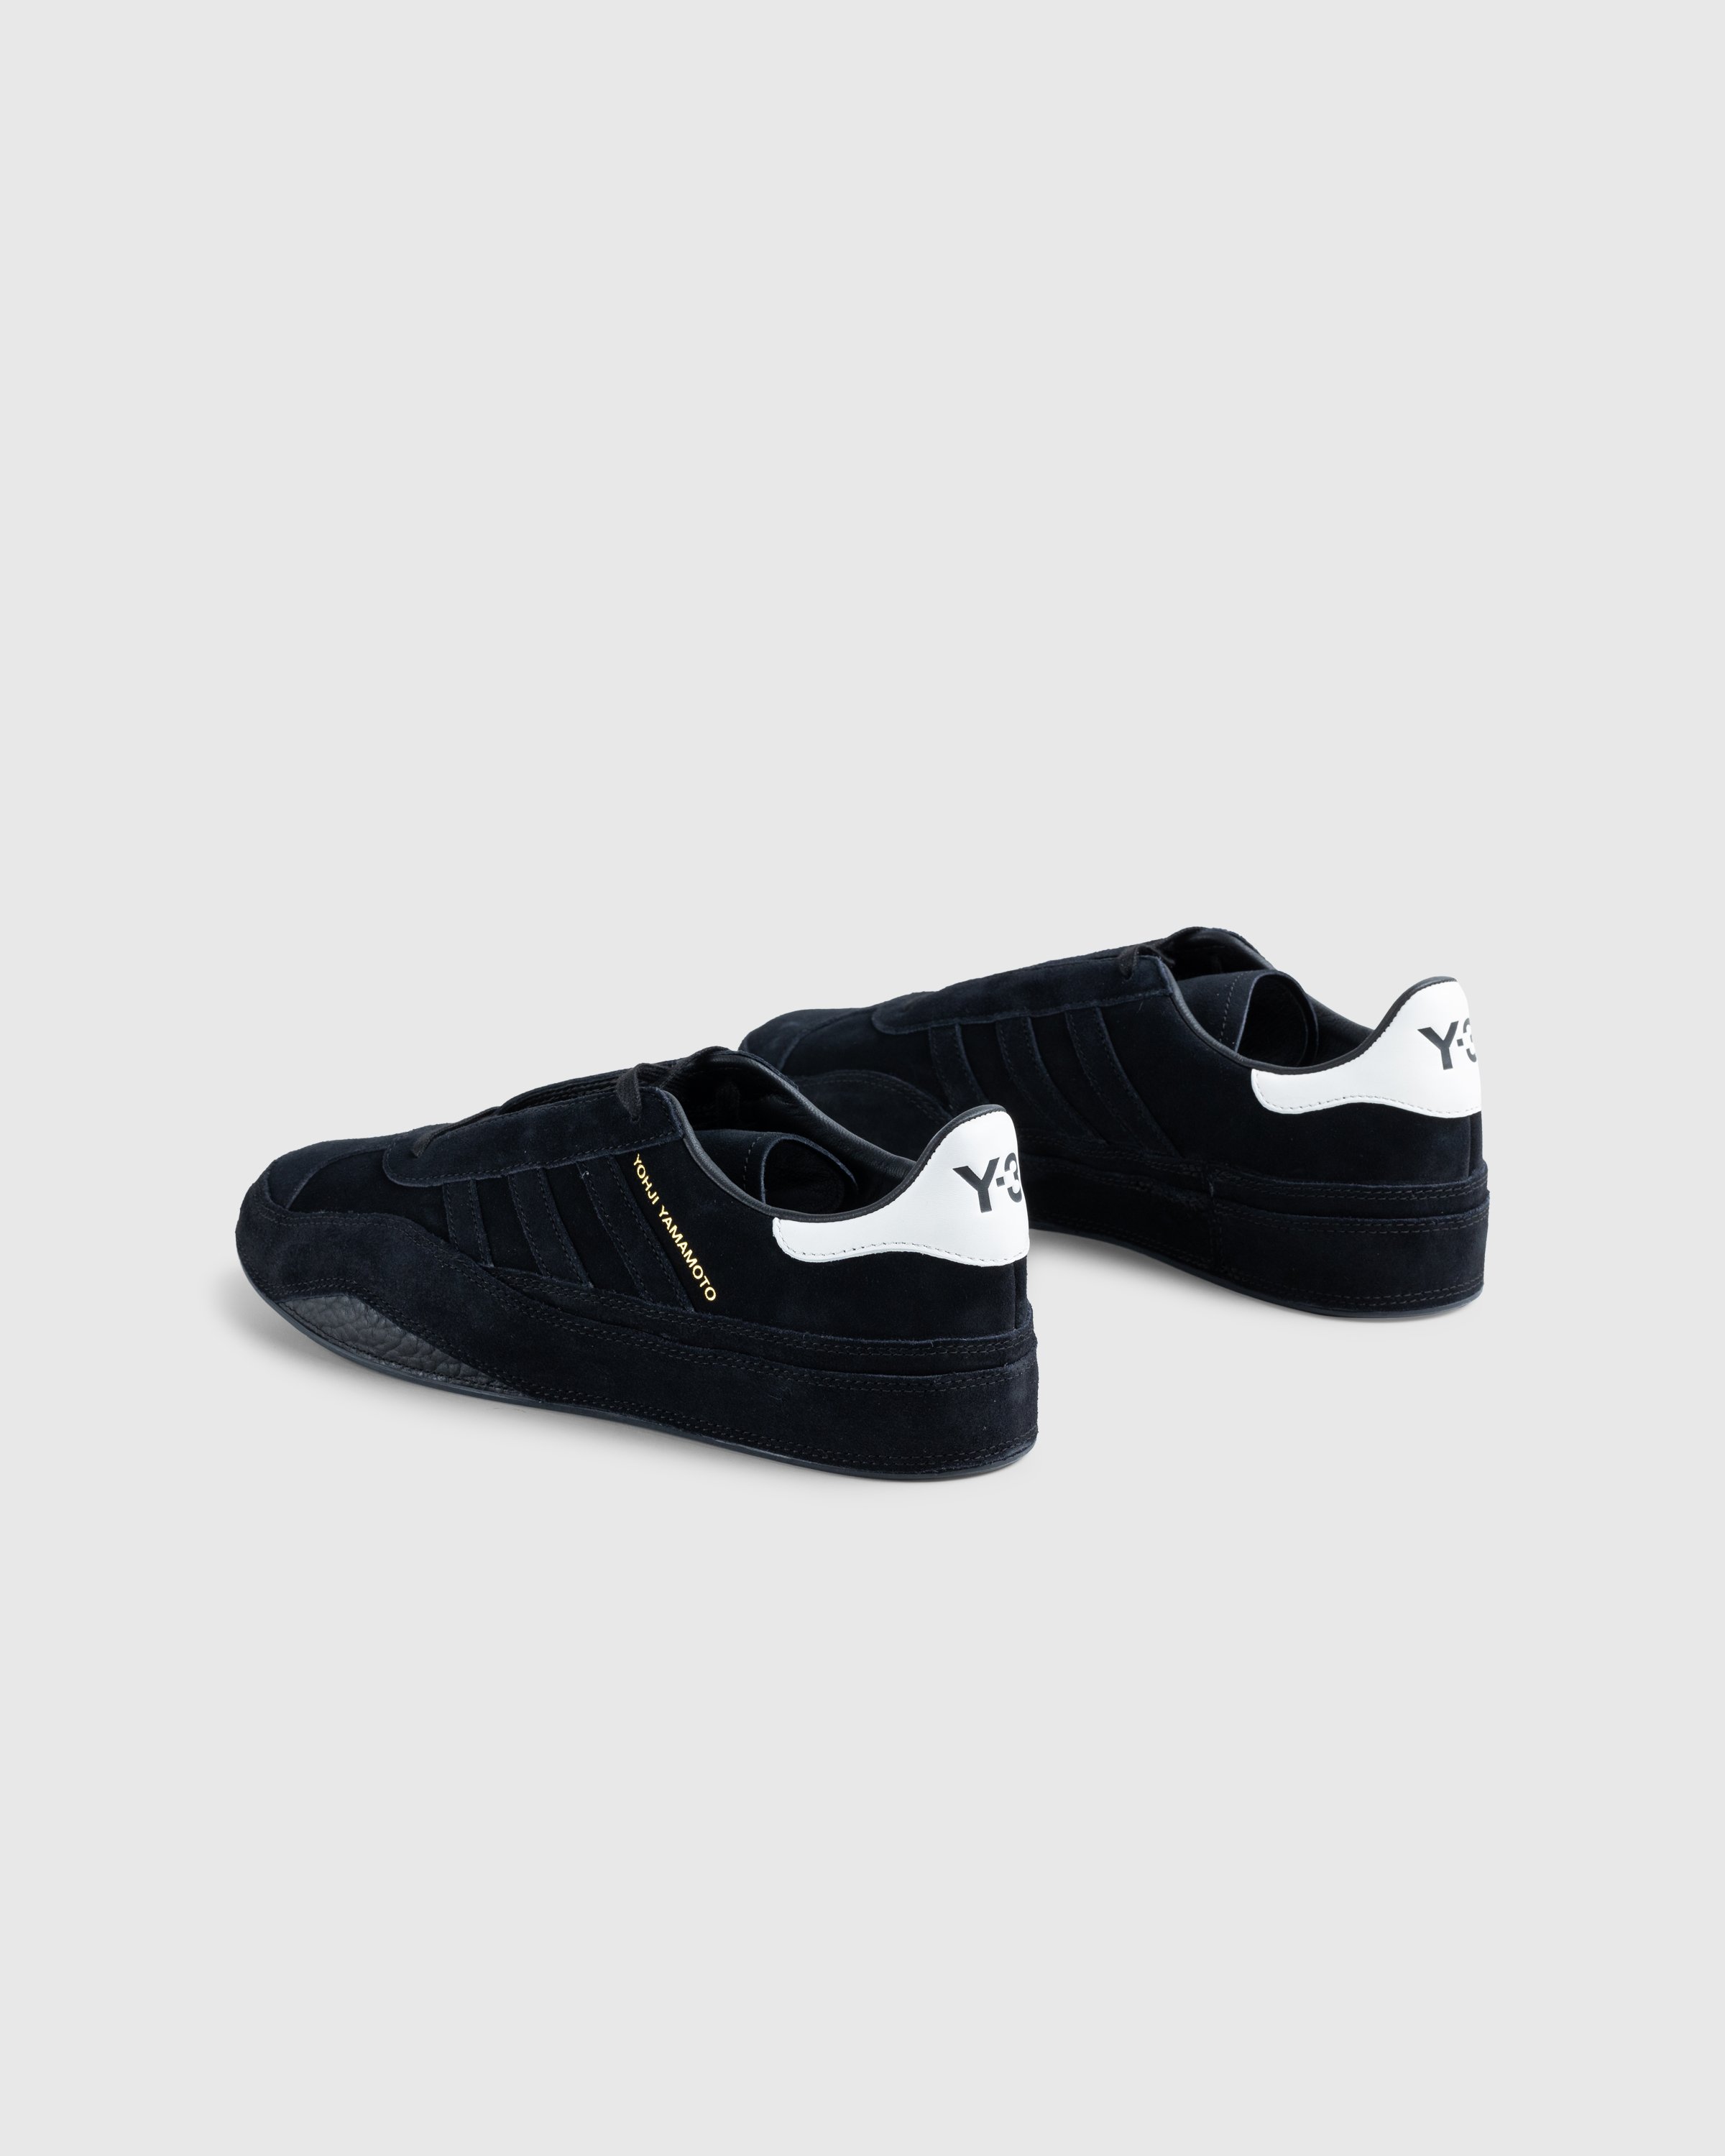 Y-3 - Gazelle Black - Footwear - Black - Image 4